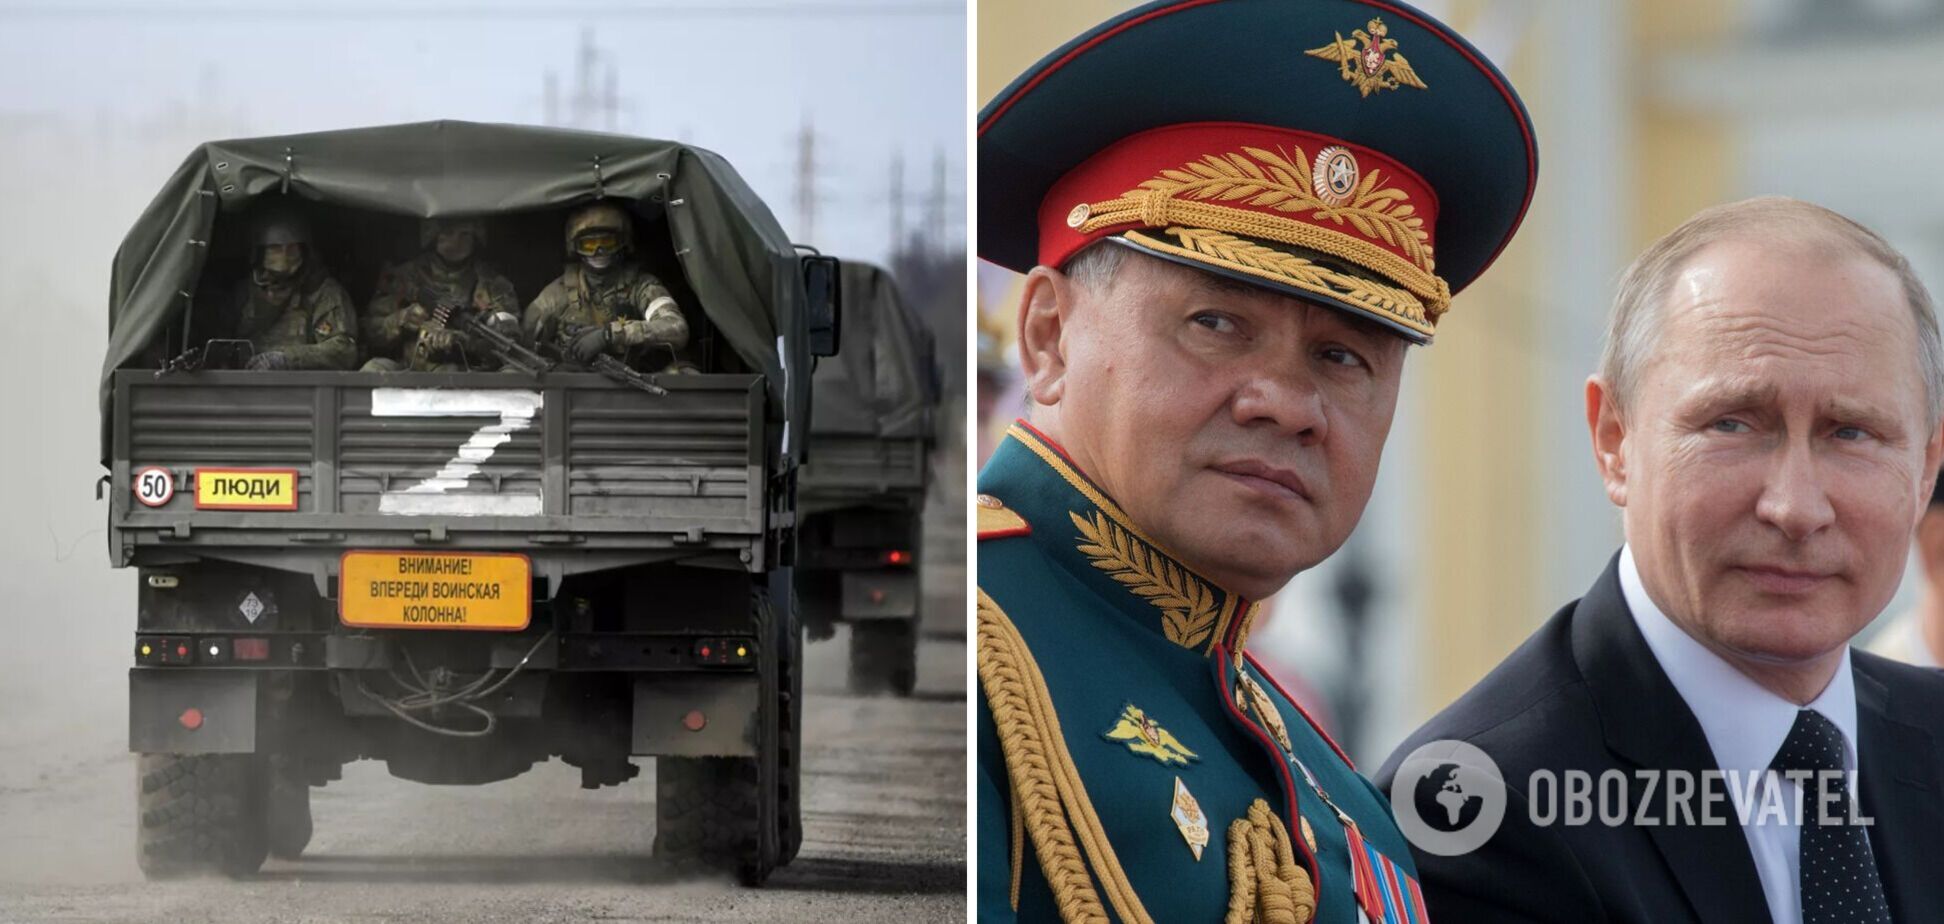 'Путин – с*ка' и 'Шойгу – профан': в Украине перехватили разговор российских военных, критикующих руководство армии РФ